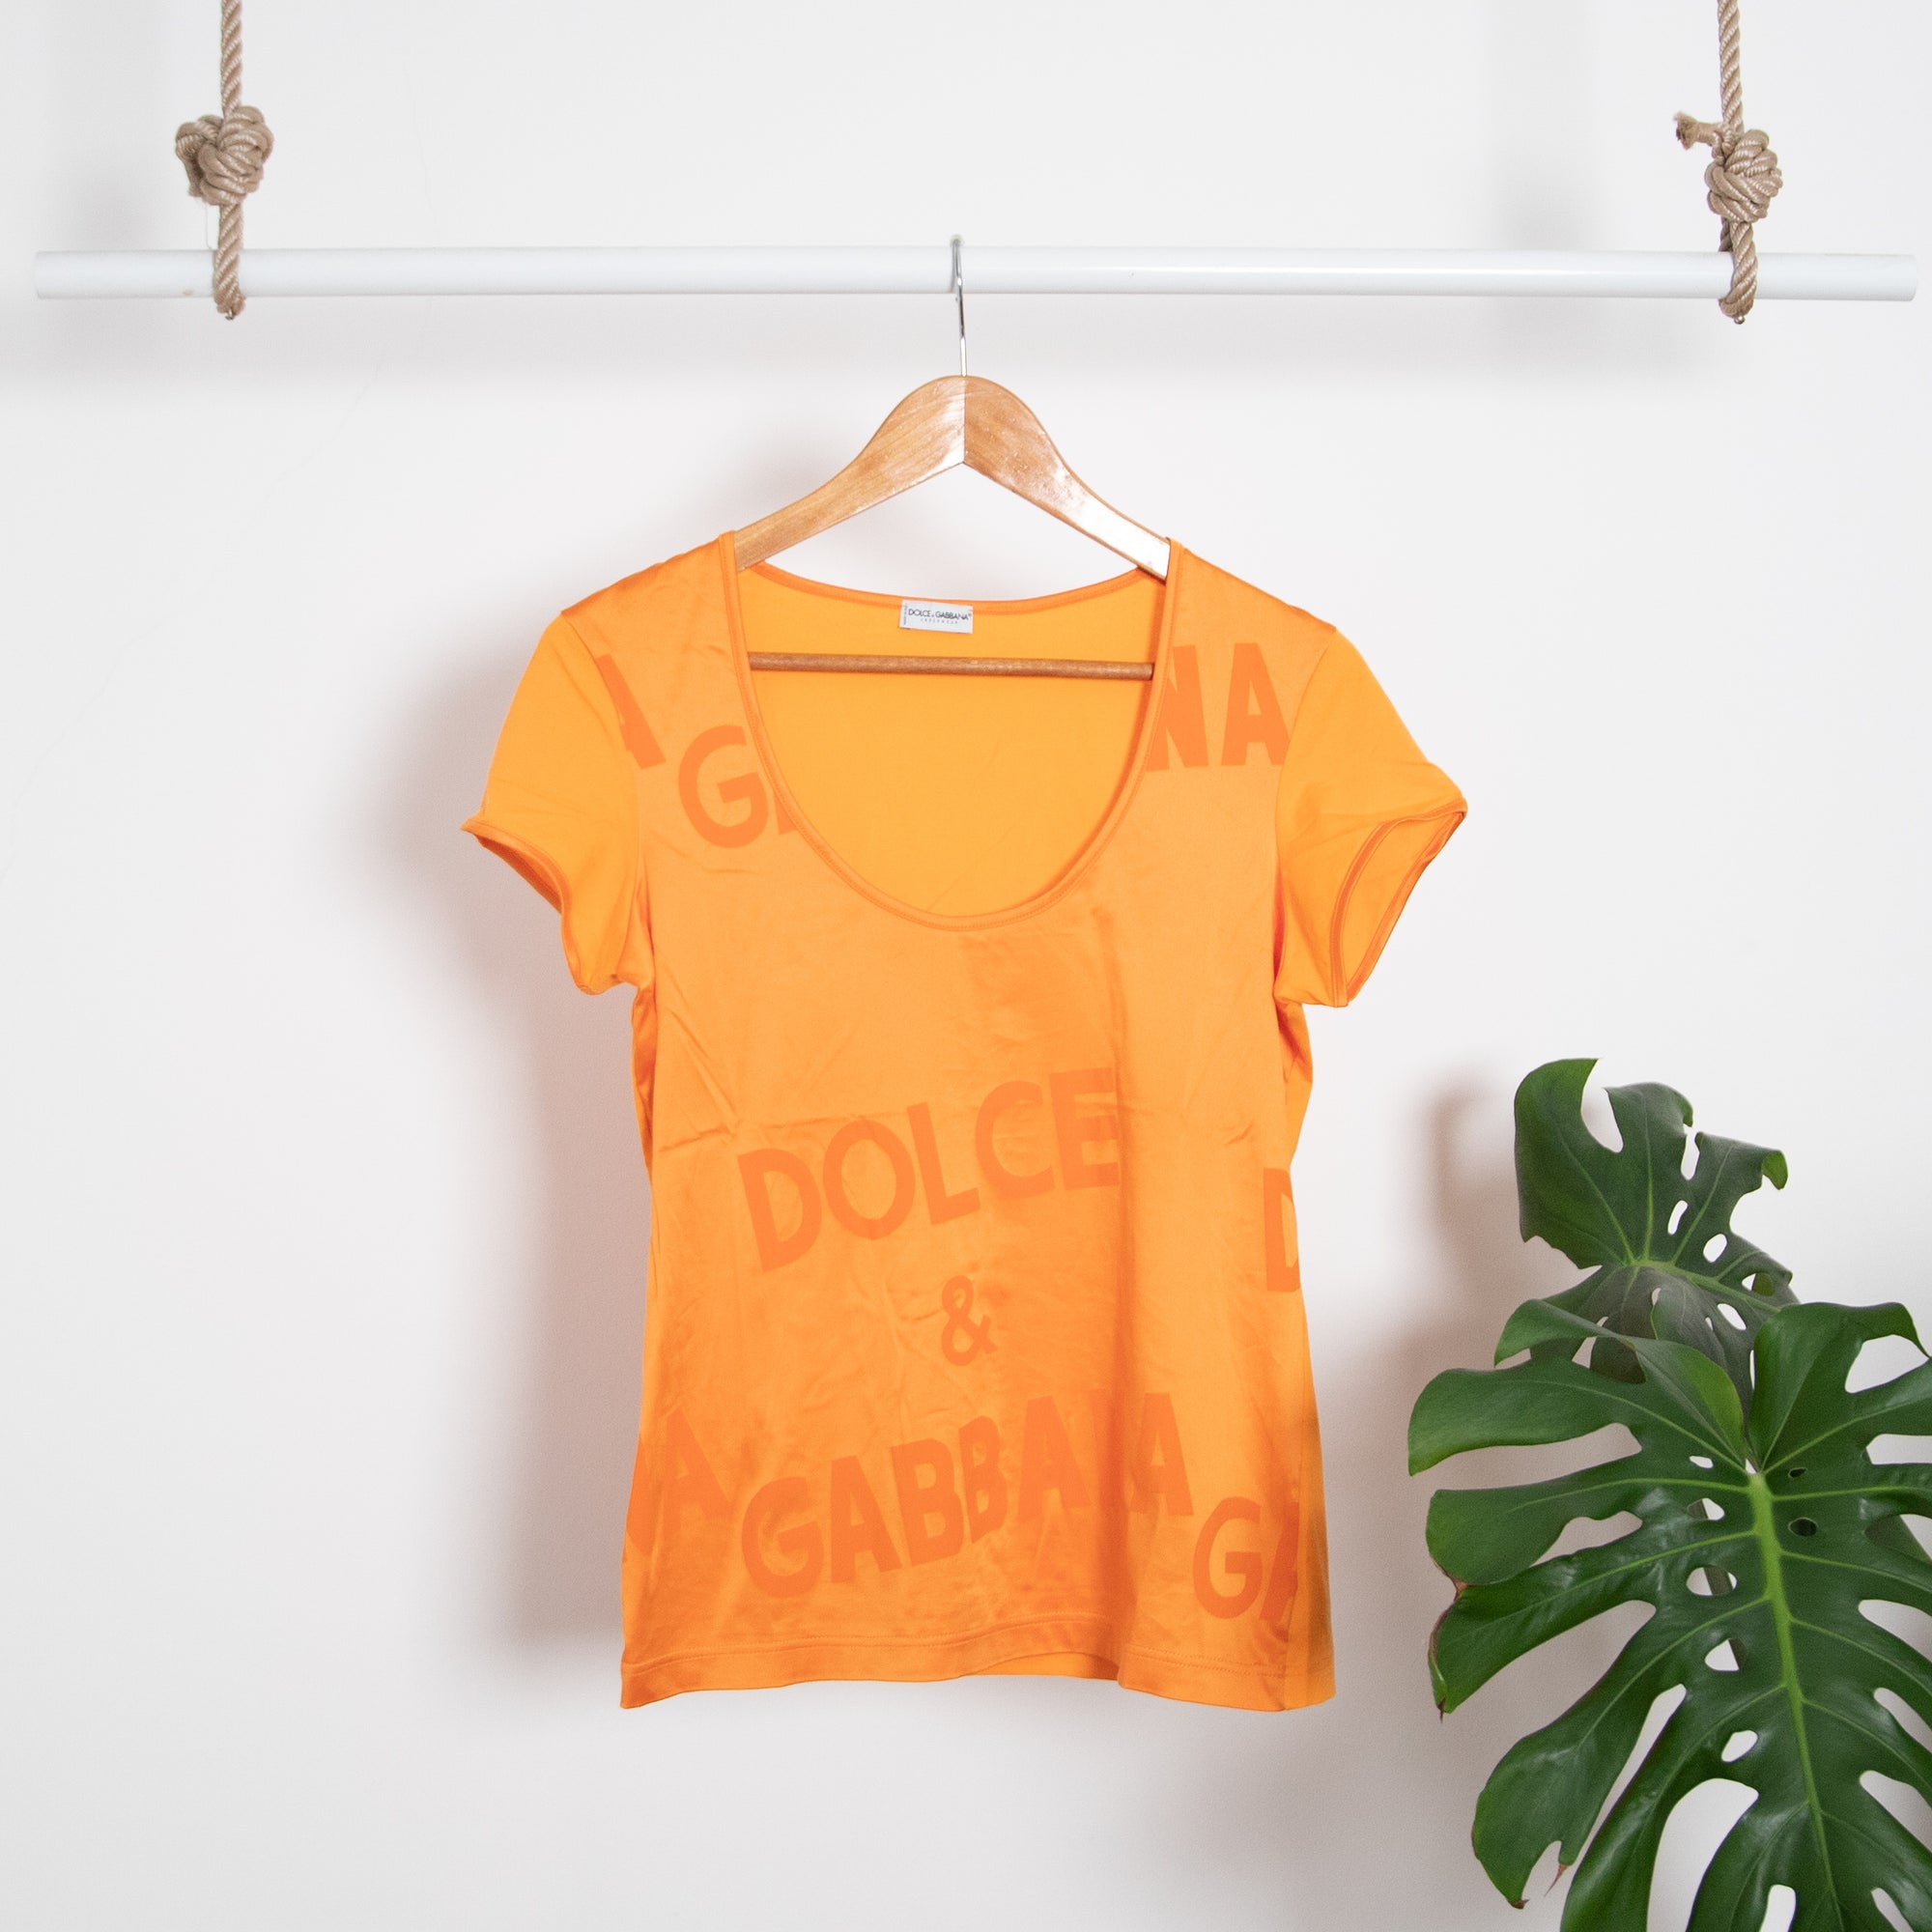 Dolce &amp; Gabbana T-shirt